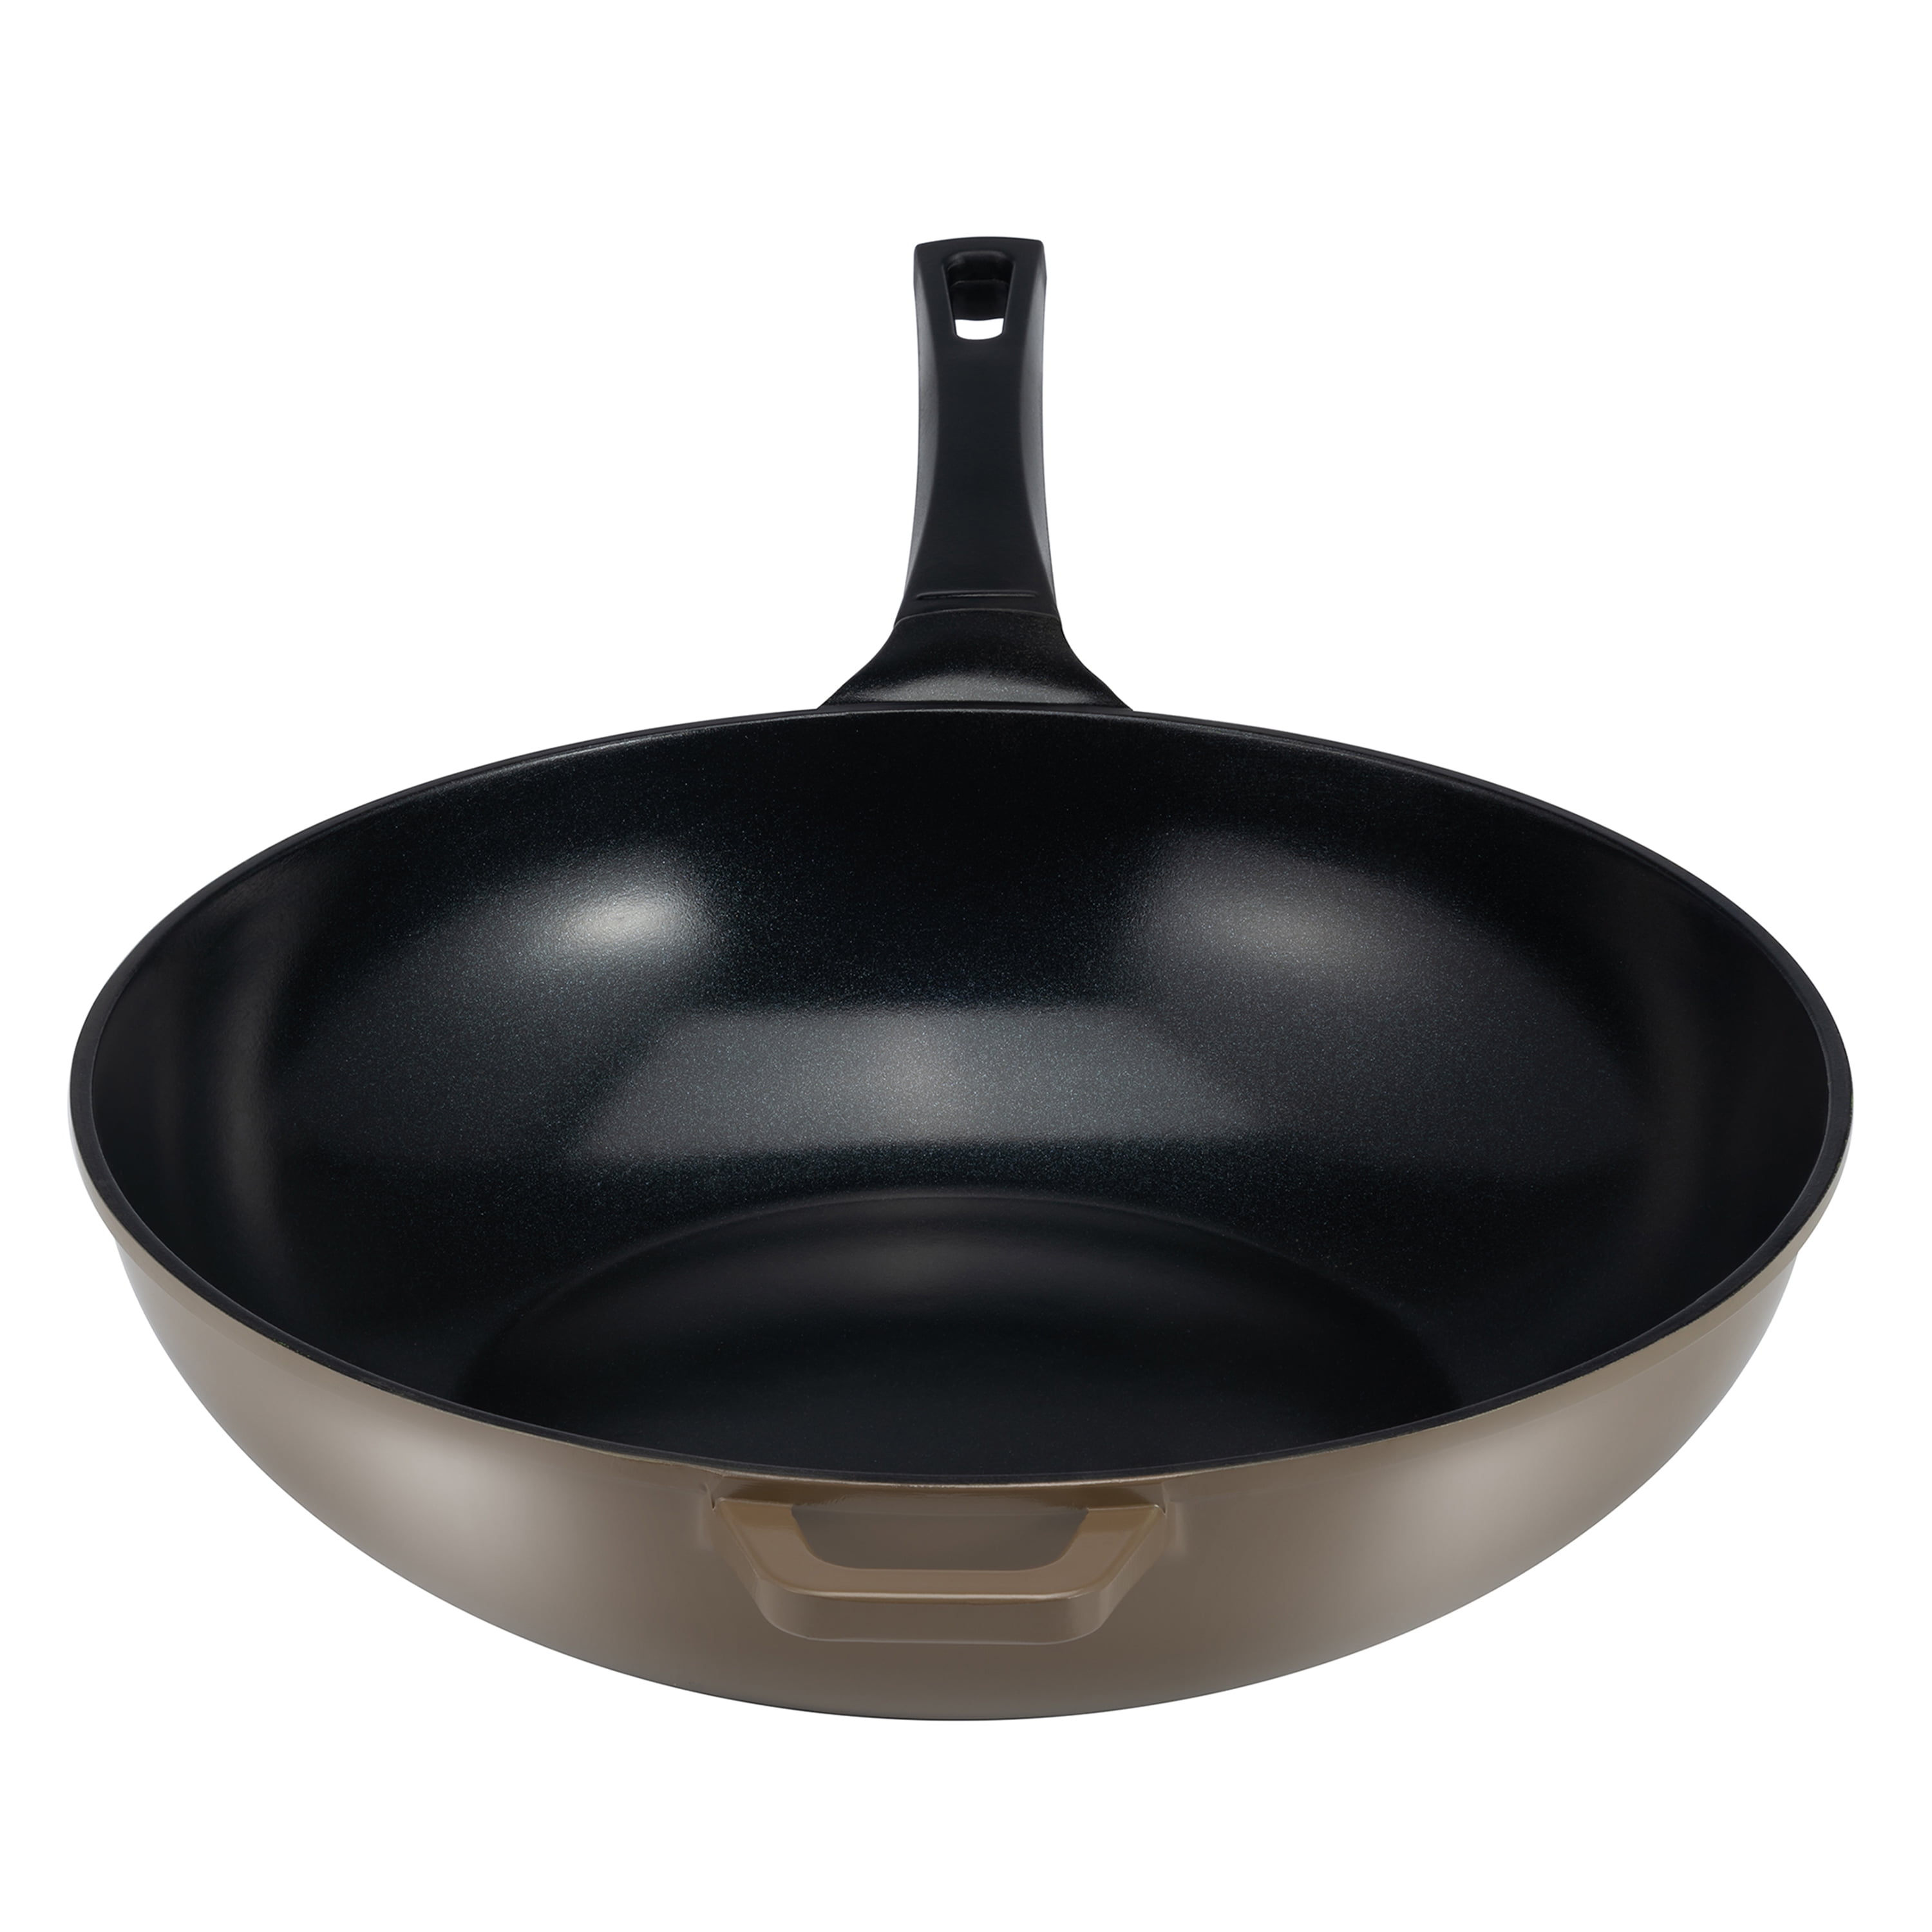  12 Green Ceramic Frying Pan by Ozeri – 100% PTFE, PFC